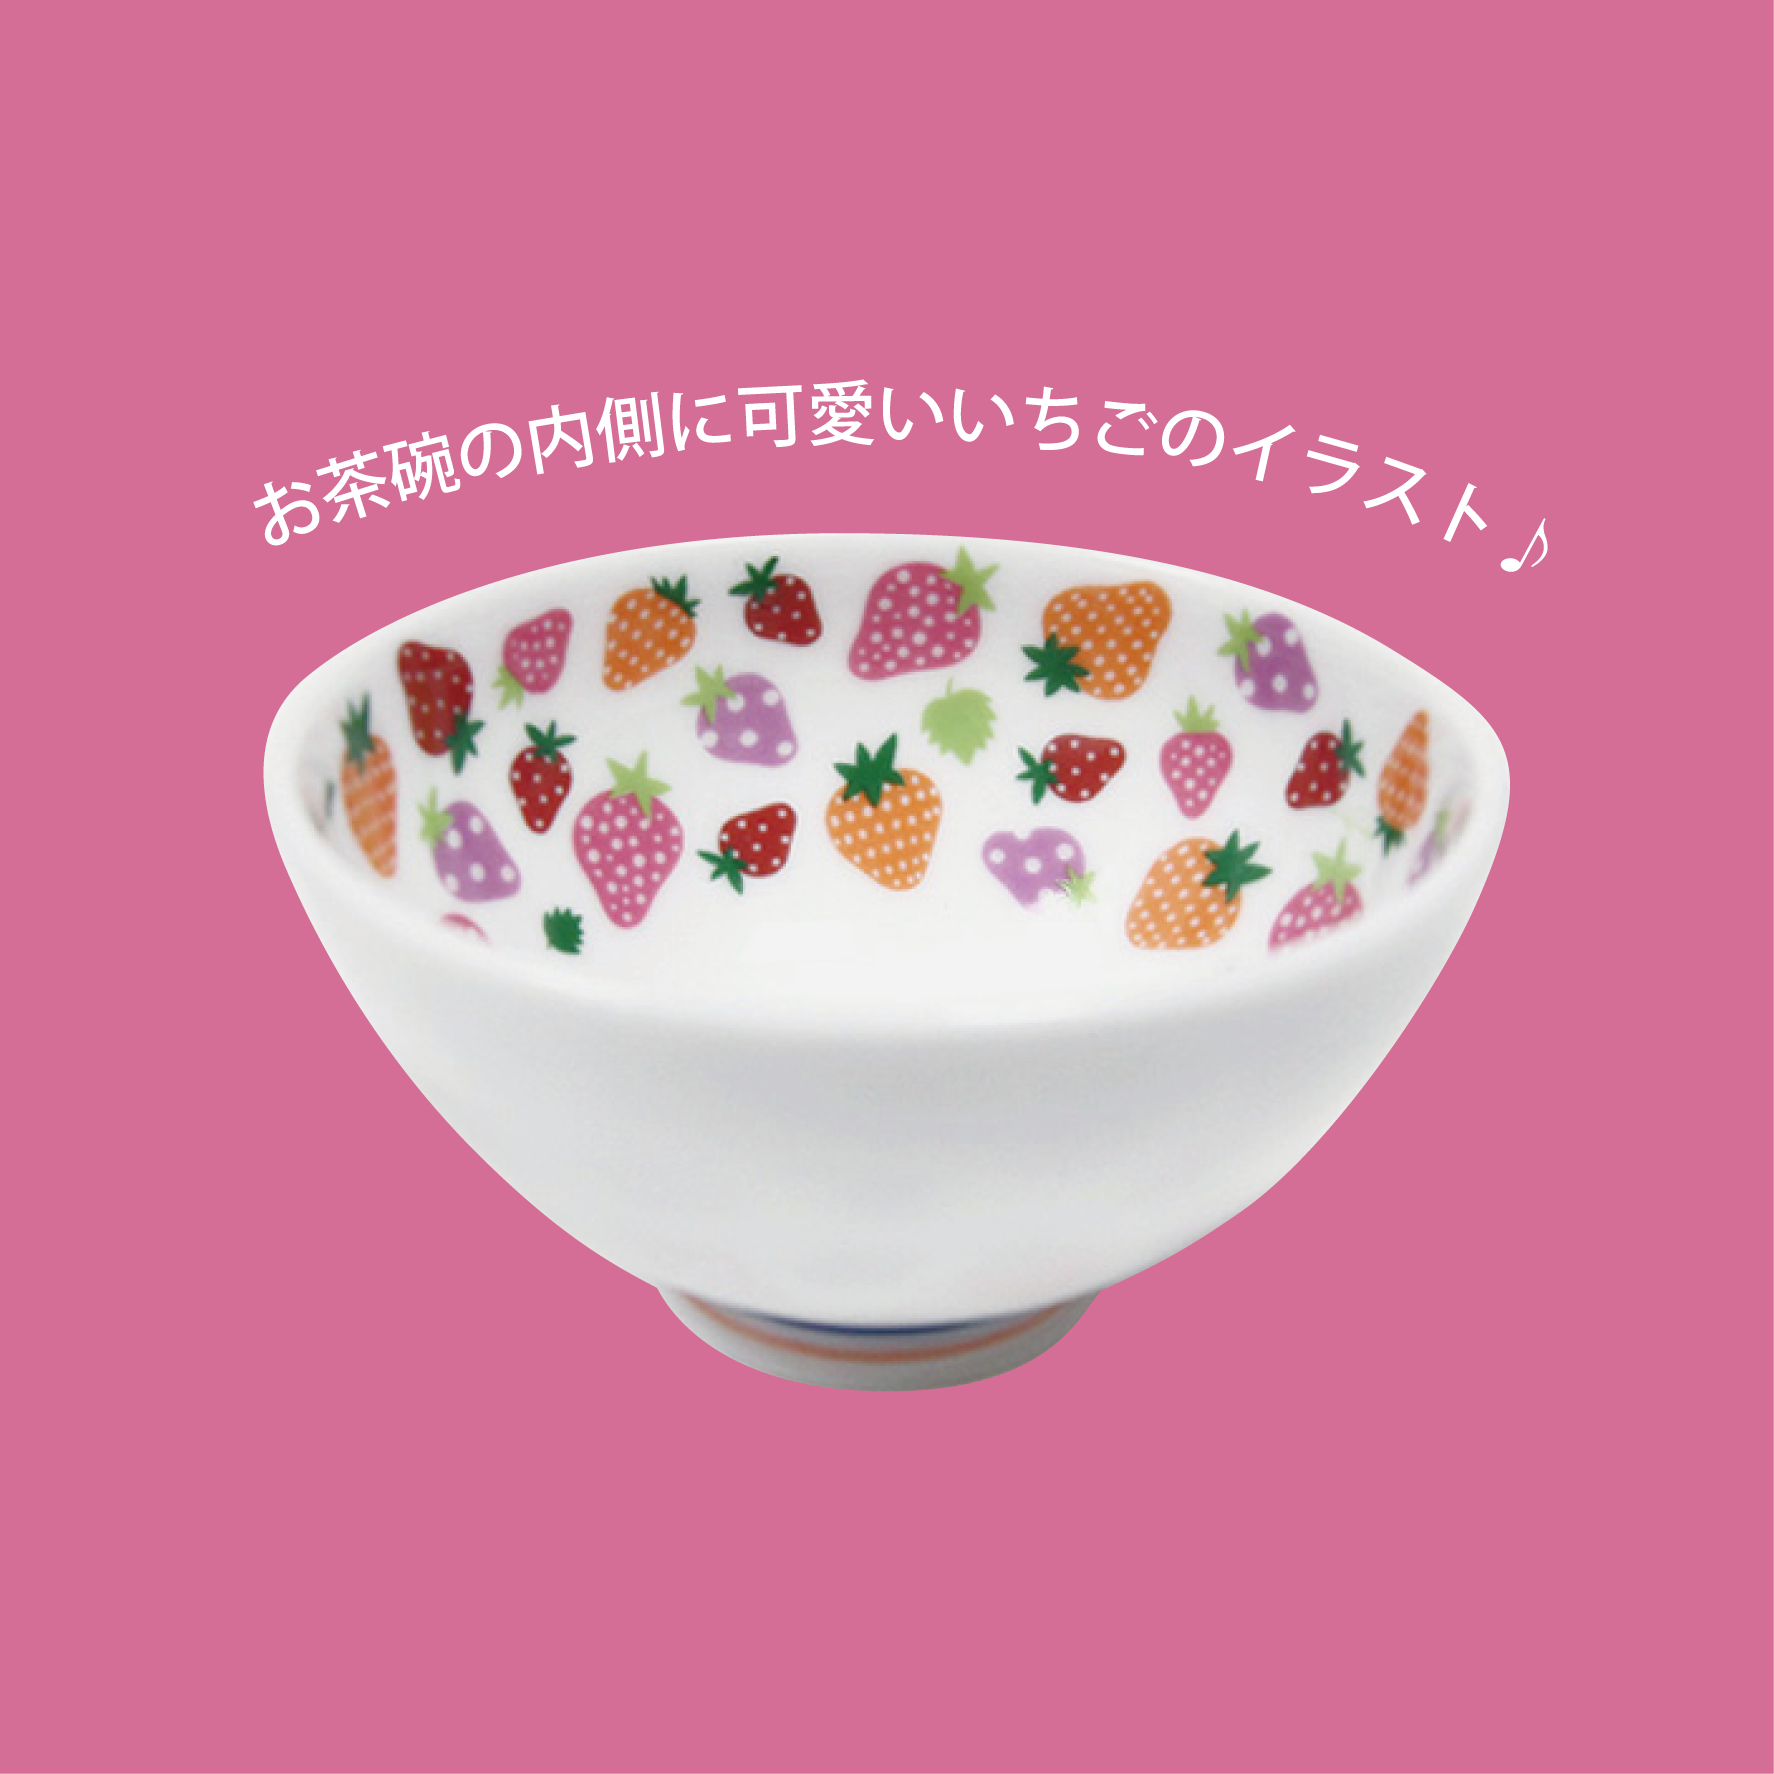 かわいいいちご柄 ふわふわ茶碗 鶯堂 Uguisu Dou お料理に合うおしゃれな食器 ステンレスの通販